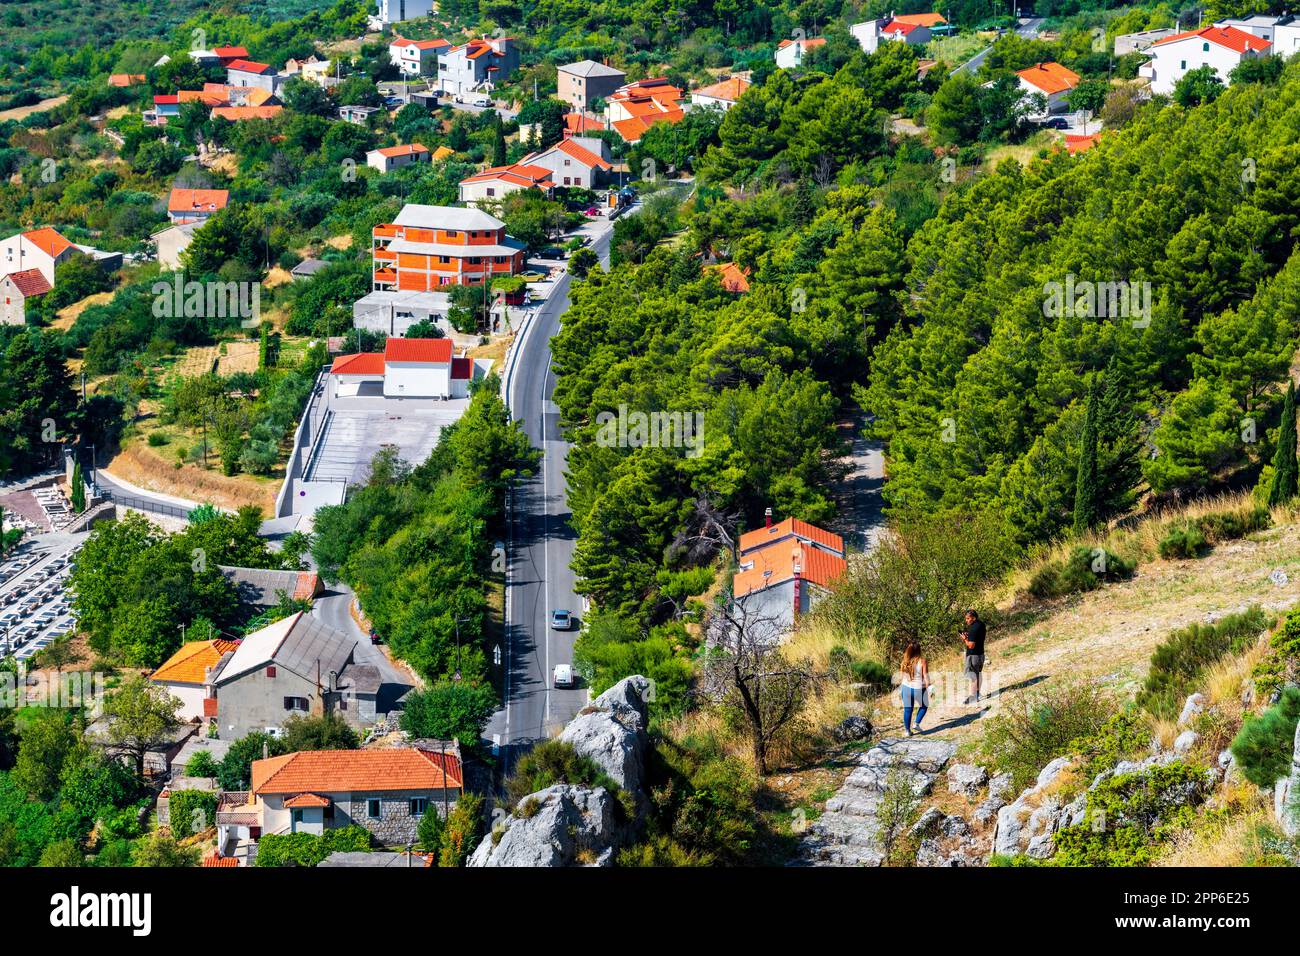 Eine malerische Aussicht auf eine ruhige Stadt mit üppigem Grün. Stockfoto